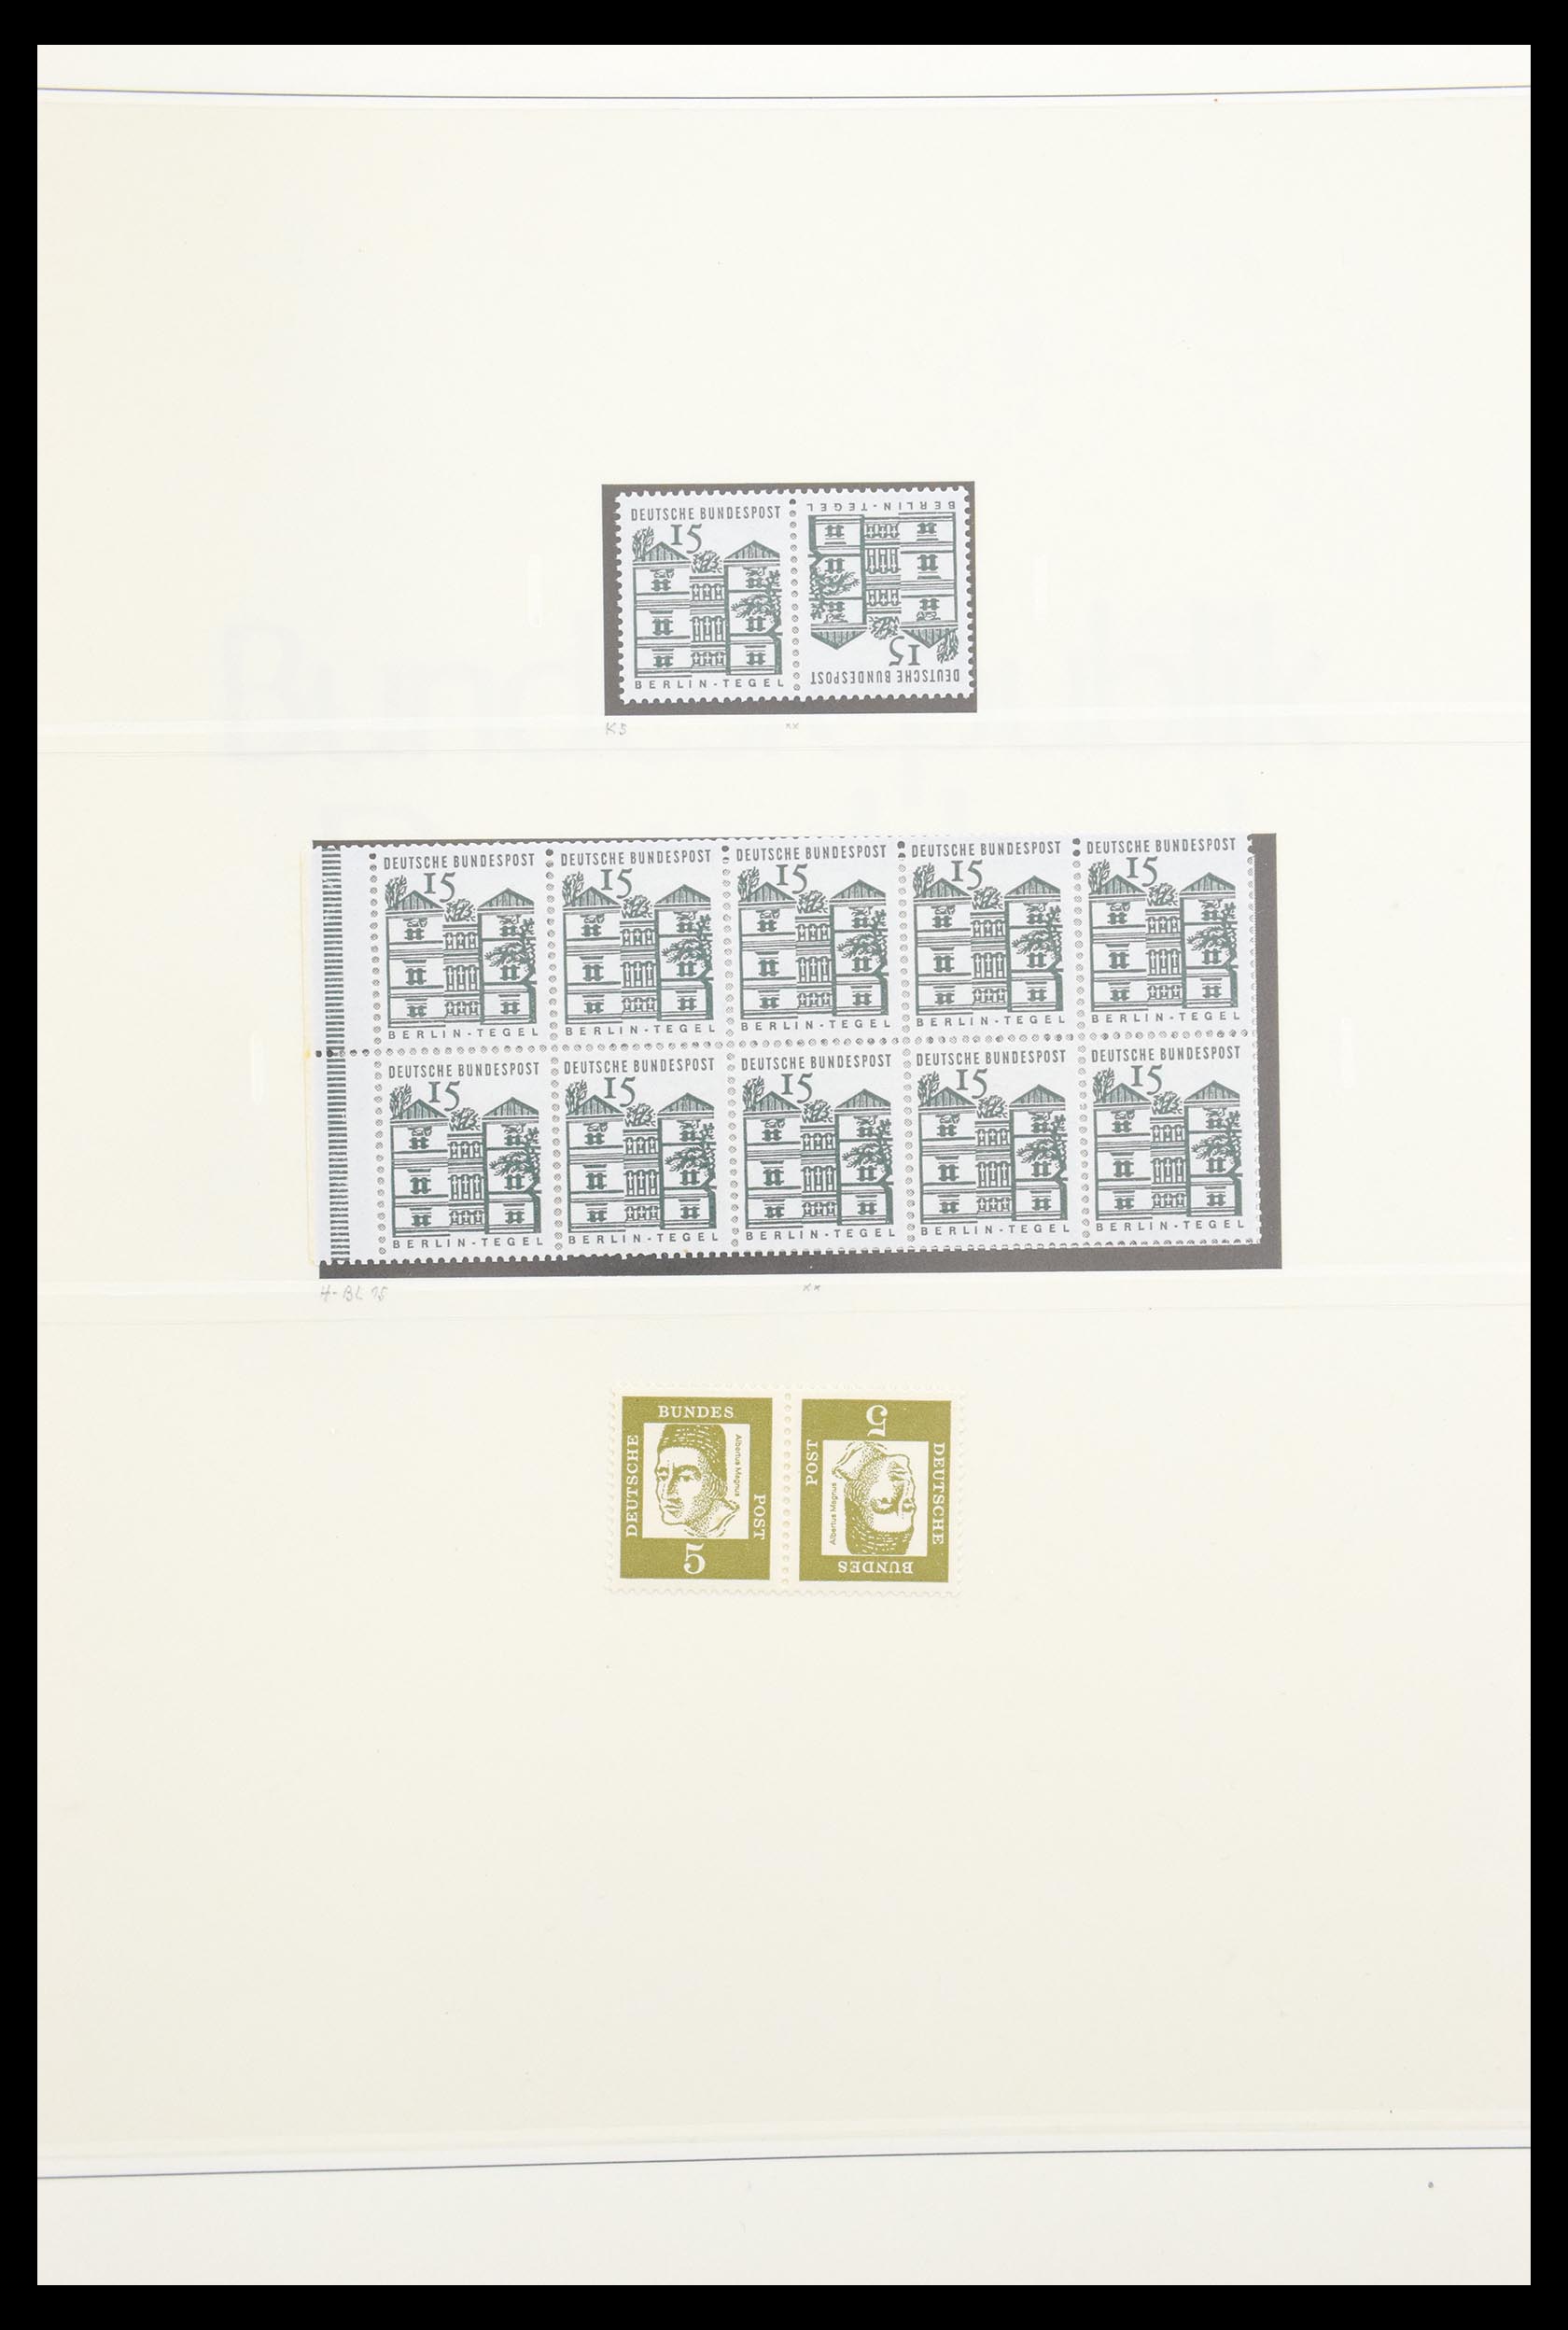 30605 022 - 30605 Bundespost combinaties 1951-1974.